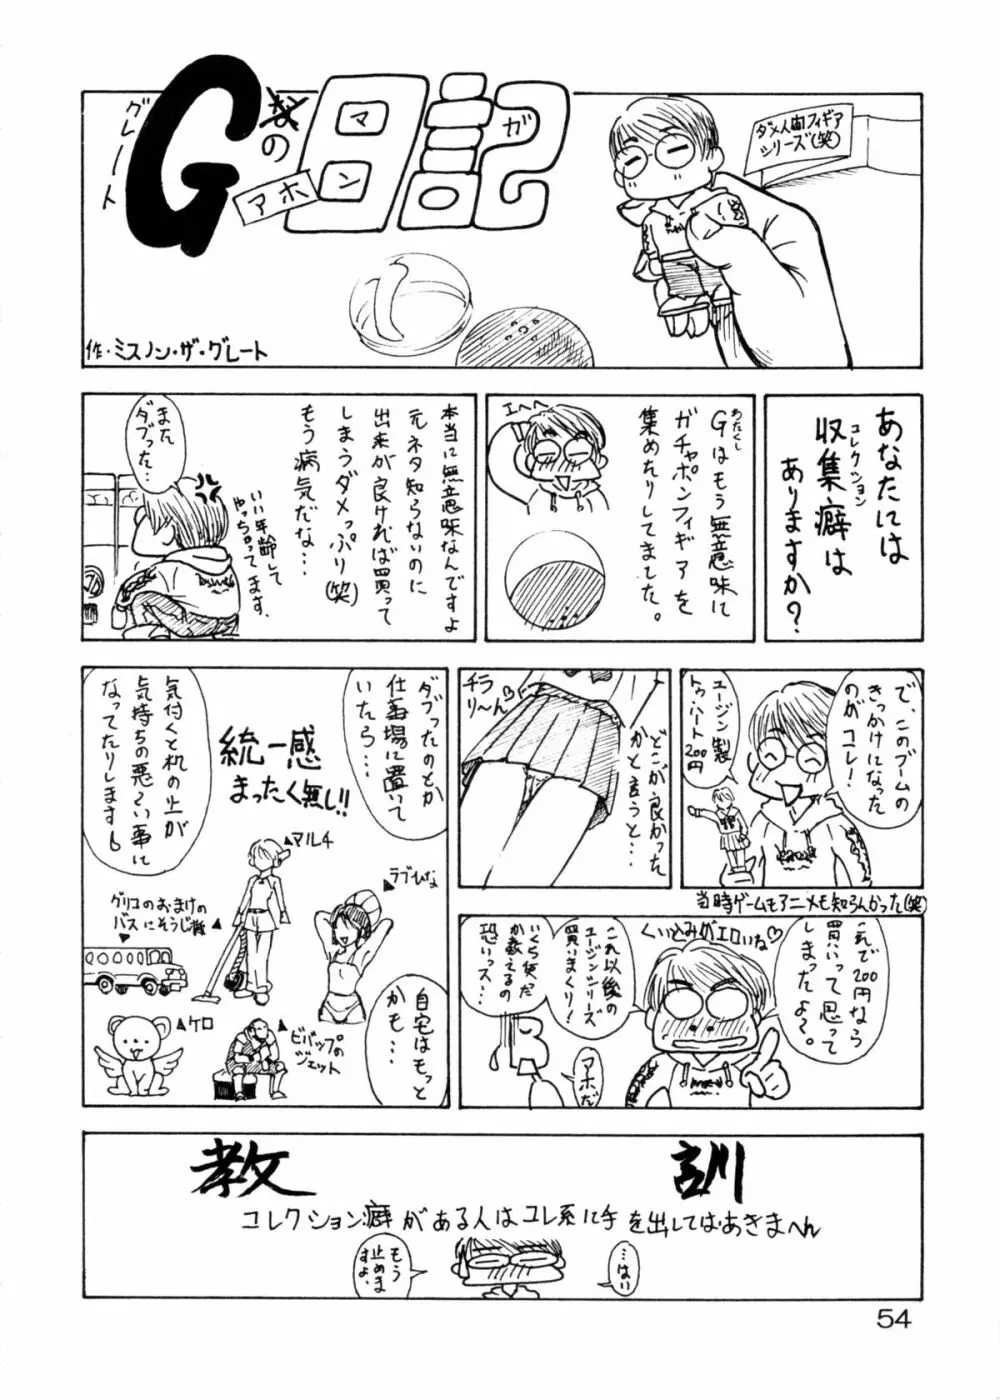 追放覚悟 Special Edition -Phase2- 53ページ